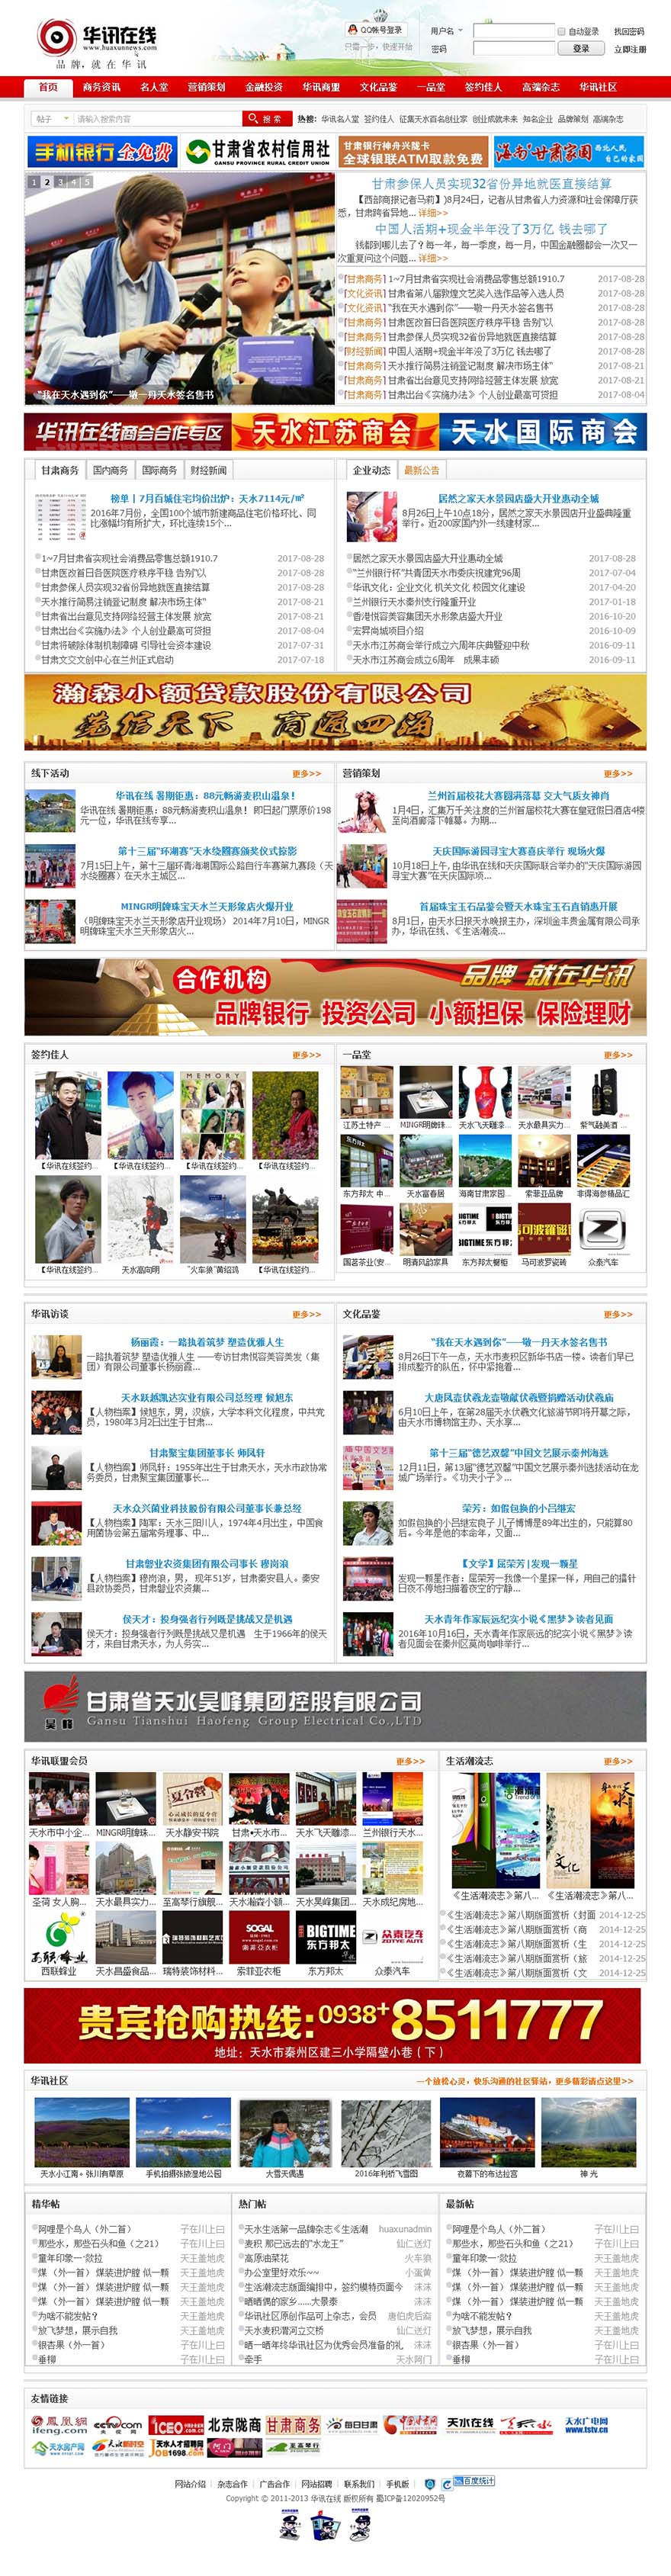 华讯在线官方网站主页